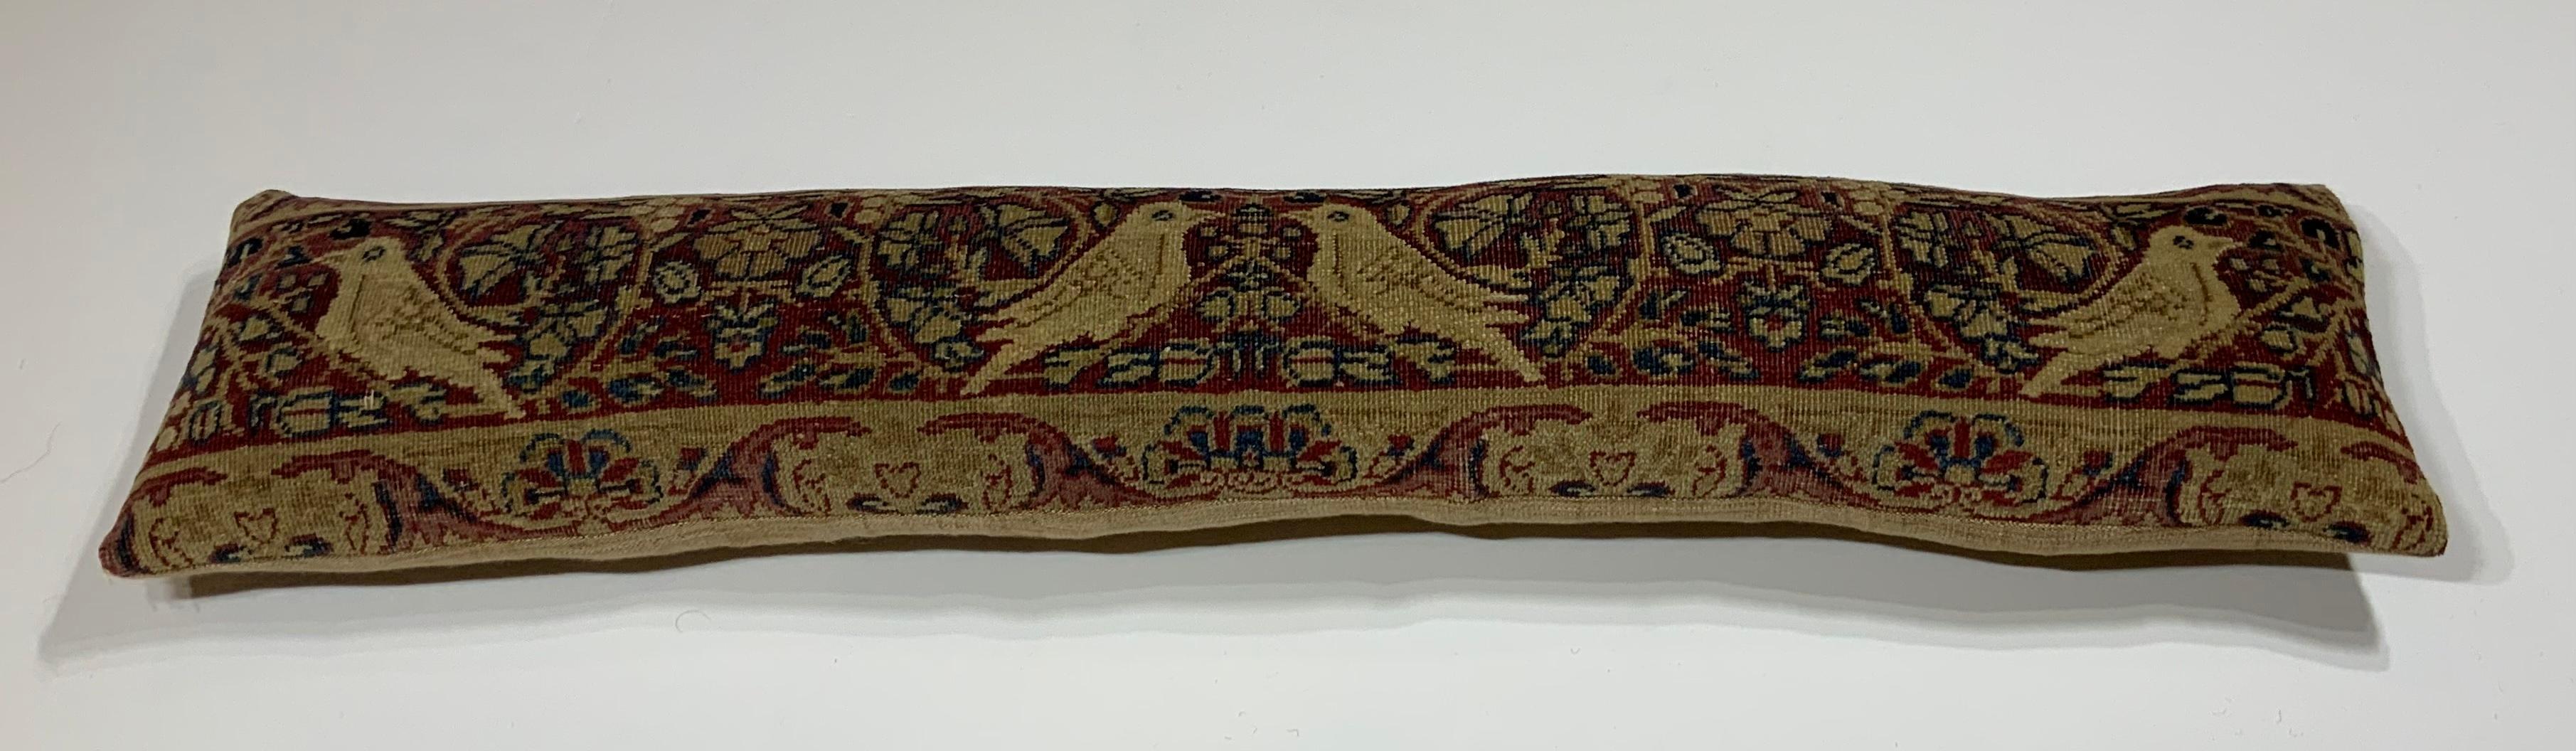 Wunderschönes Kissen aus einem handgewebten antiken Lavar-Carmon-Teppichfragment aus dem 19. Jahrhundert, das vier Vögel inmitten von Ranken und Blumen zeigt. Feine frische Einlage, hochwertige Leinenunterlage.
Fragment ist Handwäsche vor werden